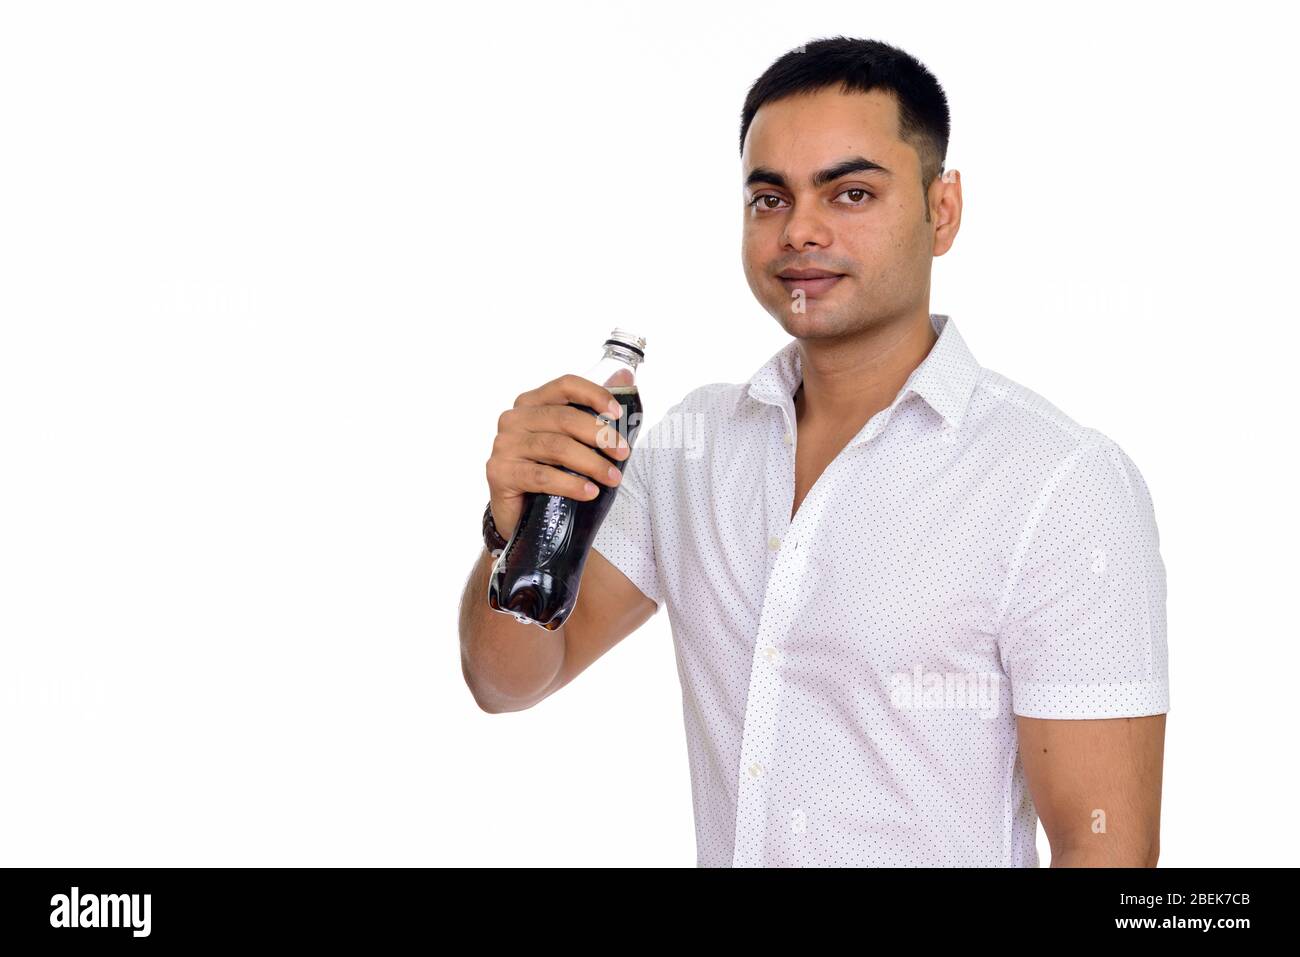 Studioaufnahme eines jungen hübschen Indianers, der Soda vor weißem Hintergrund trinkt Stockfoto